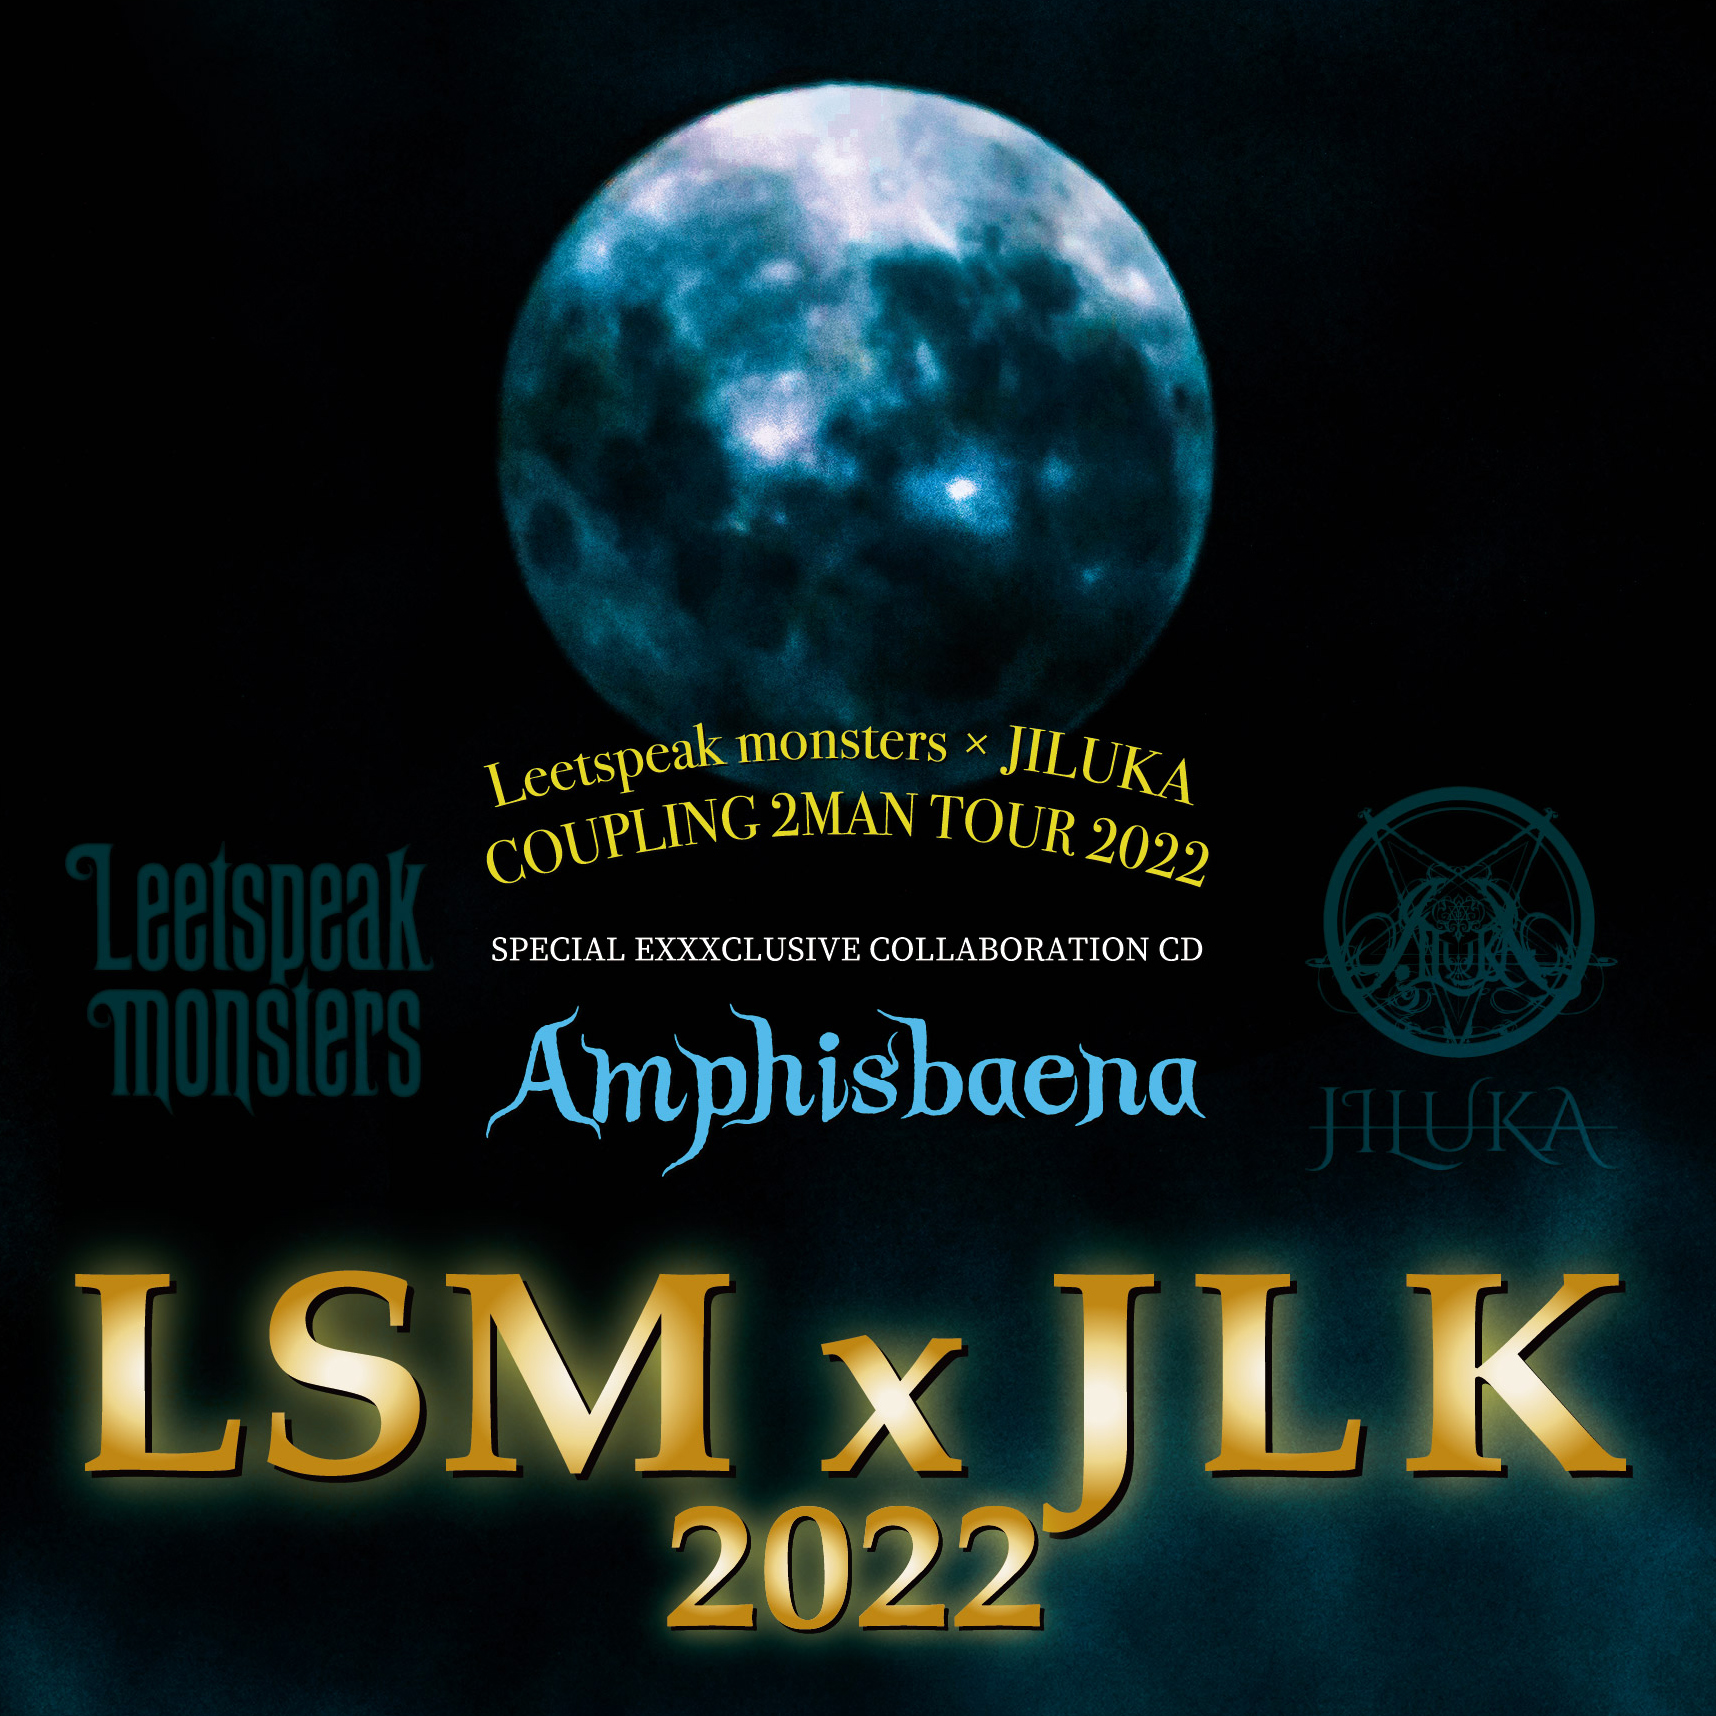 LSMJLK002_booklet_H1-H4_ol